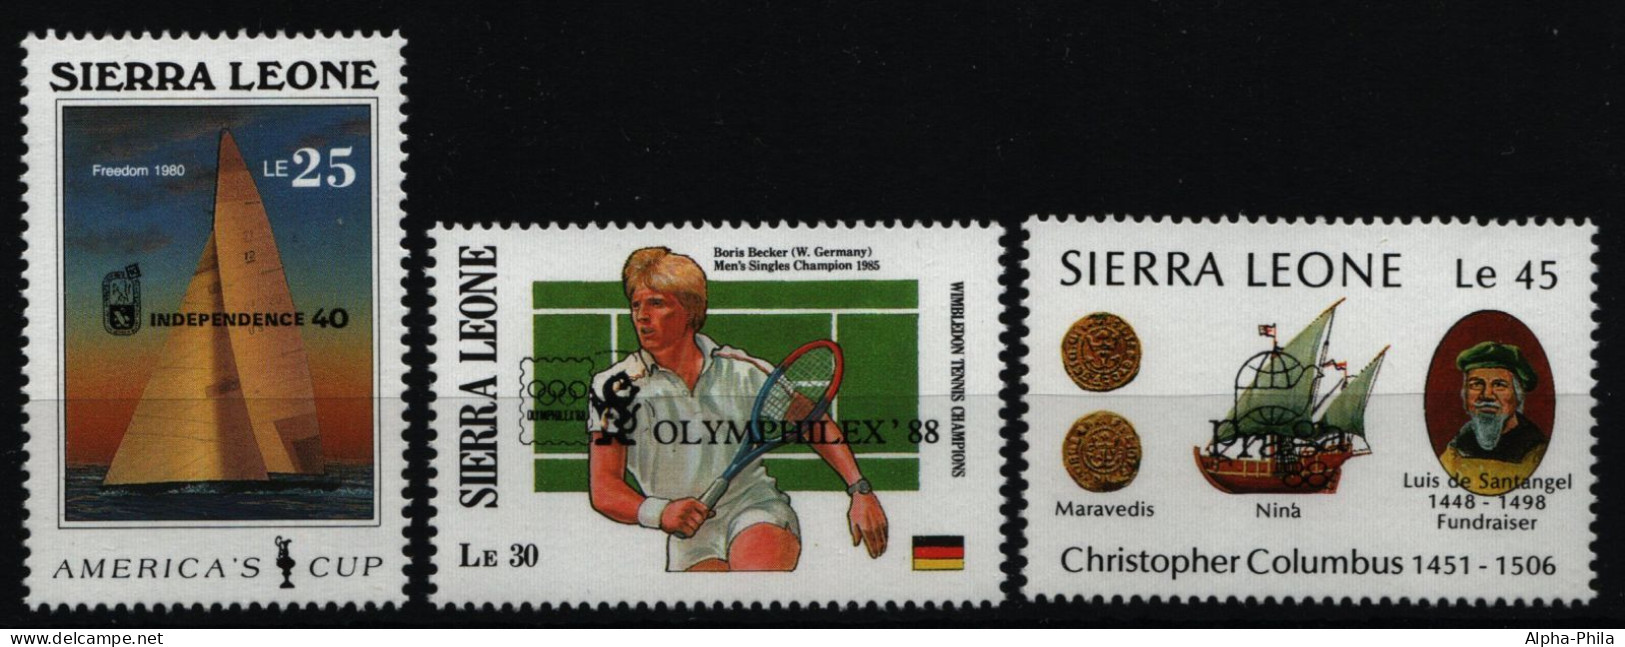 Sierra Leone 1988 - Mi-Nr. 1086-1088 ** - MNH - Briefmarkenausstellungen - Sierra Leone (1961-...)